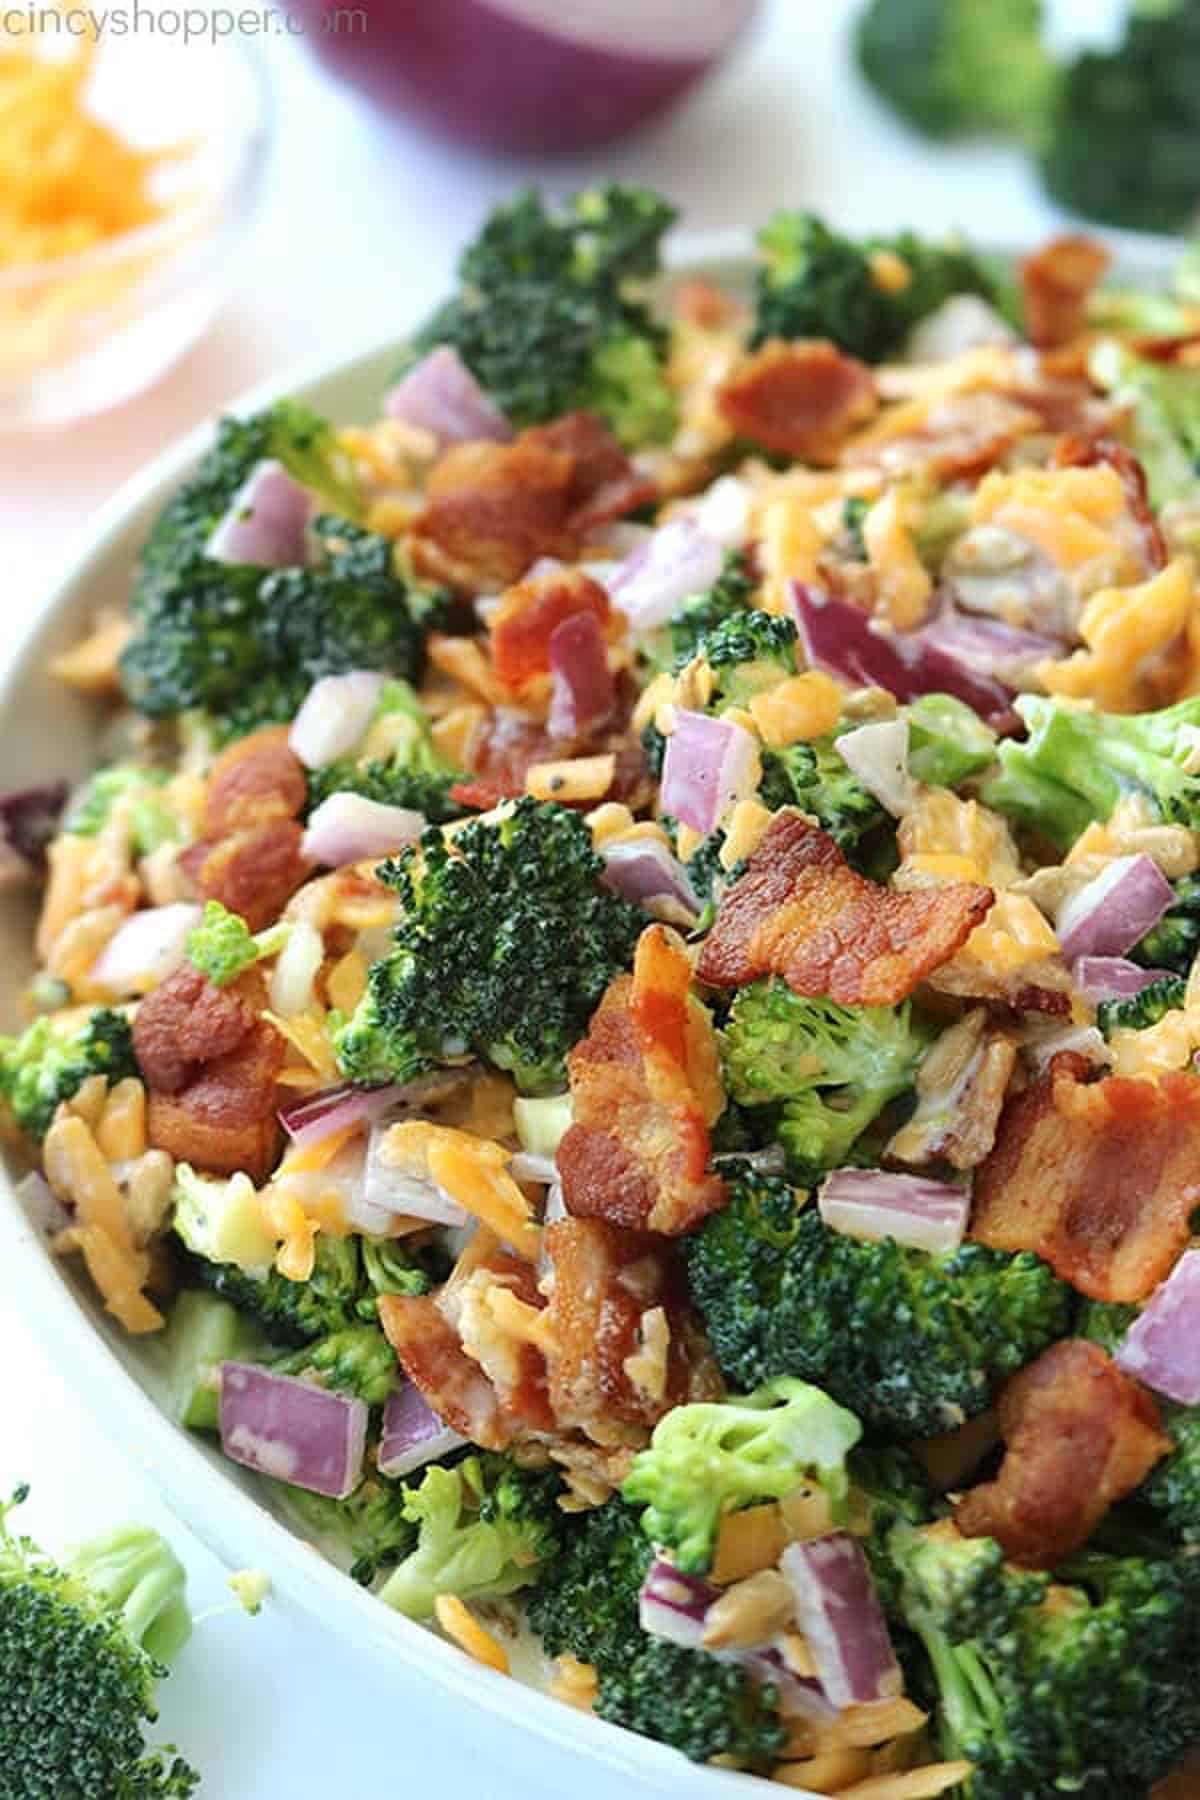 21. Easy Broccoli Salad Recipe